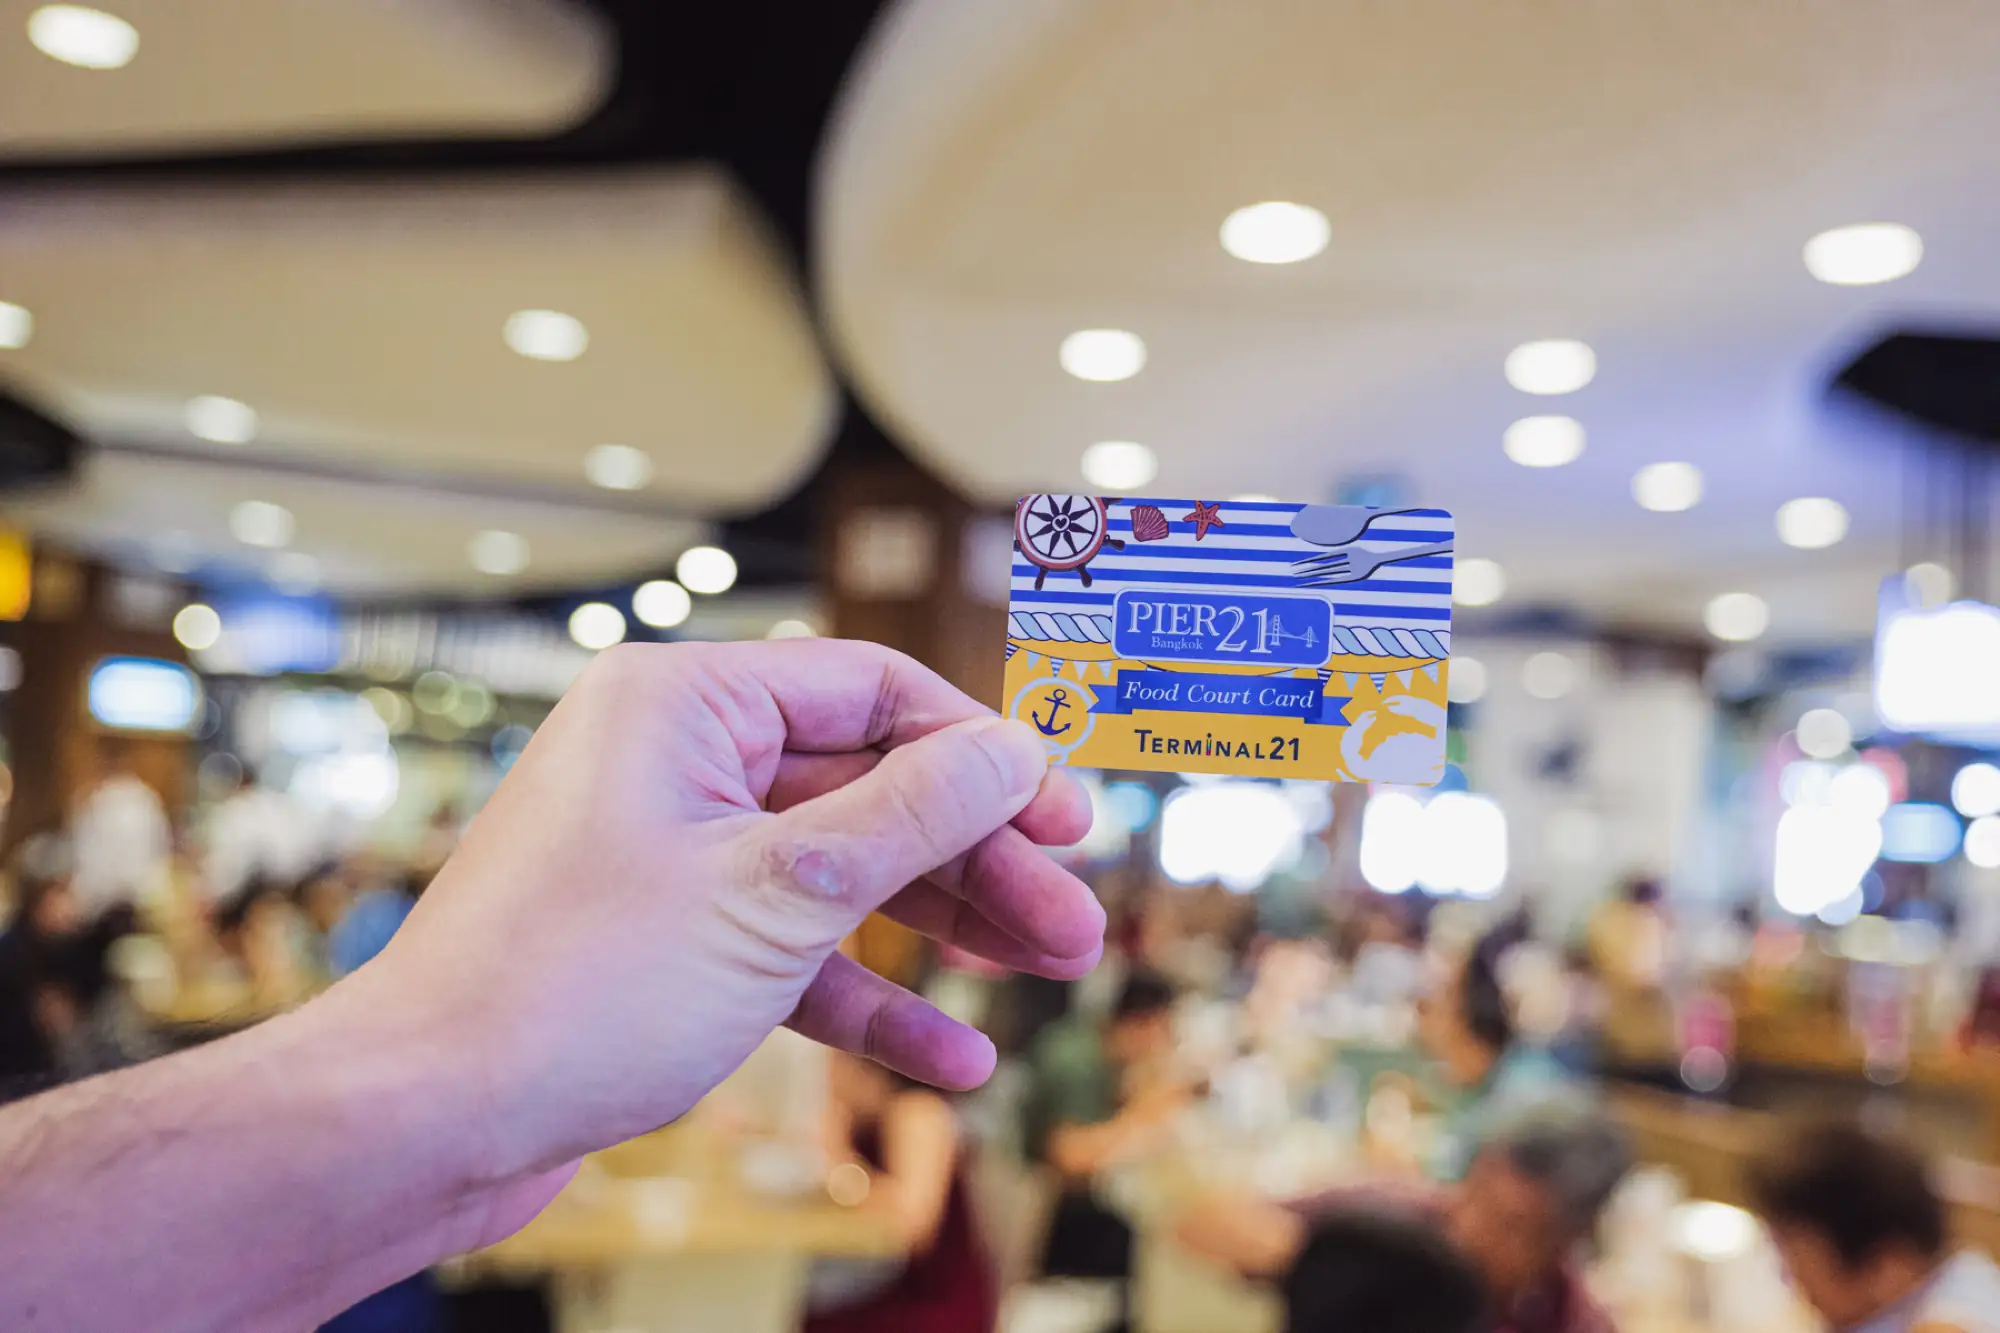 曼谷Terminal 21美食區代金卡1個月內不限次數使用